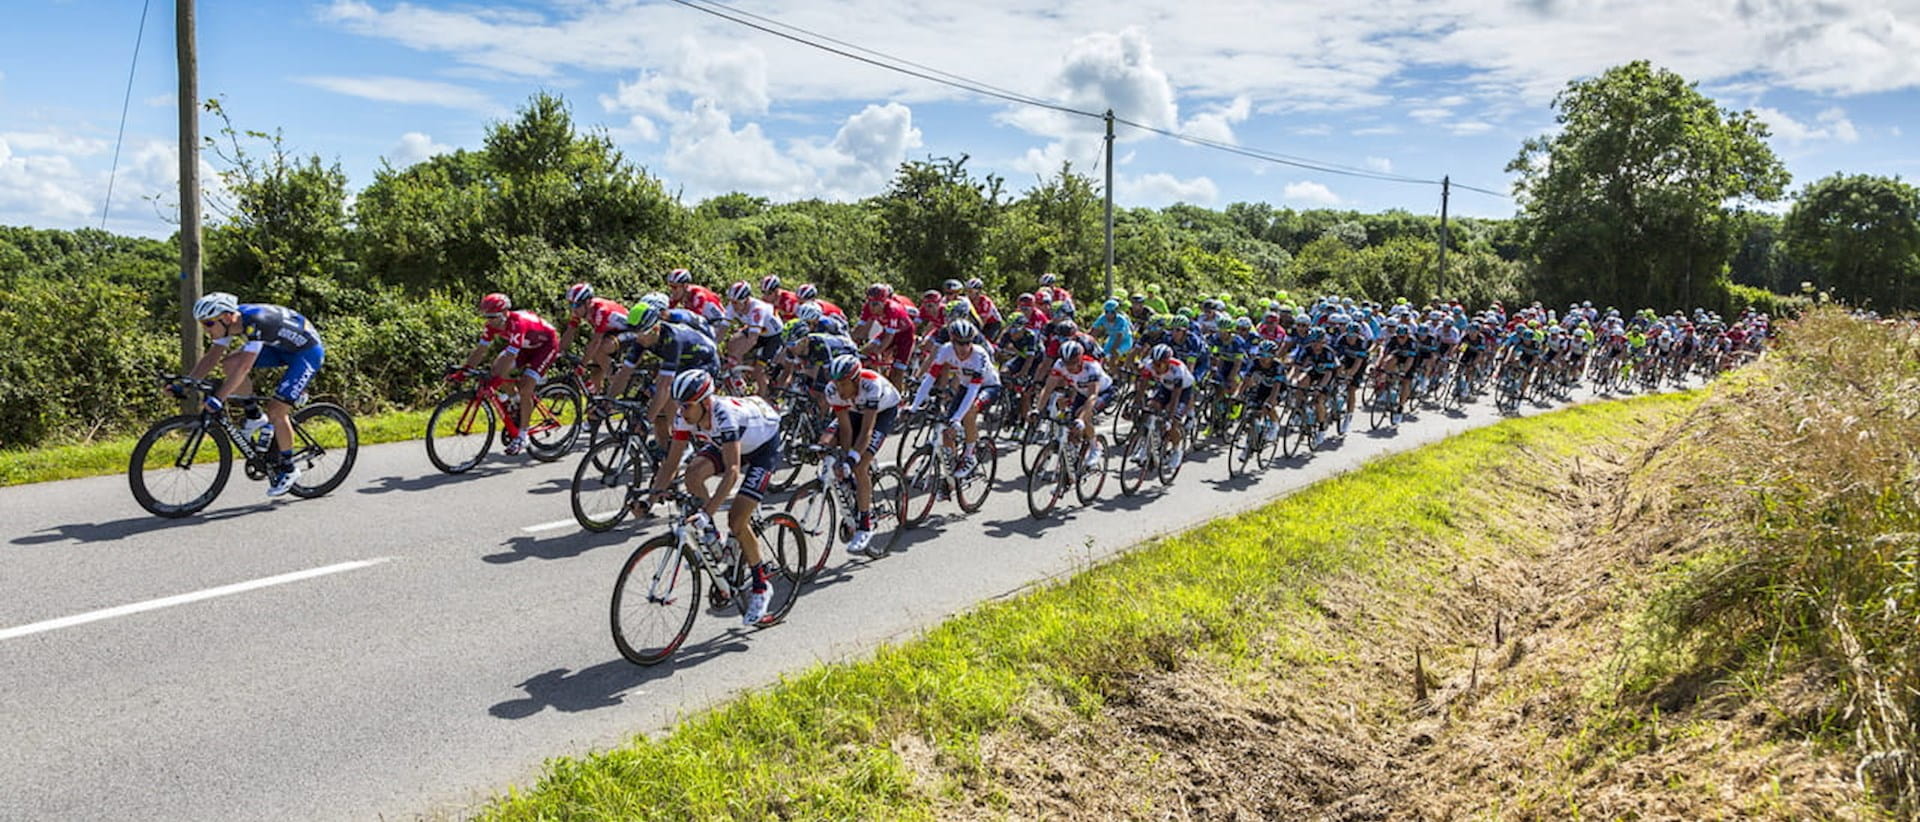 Tour de France bicycle race